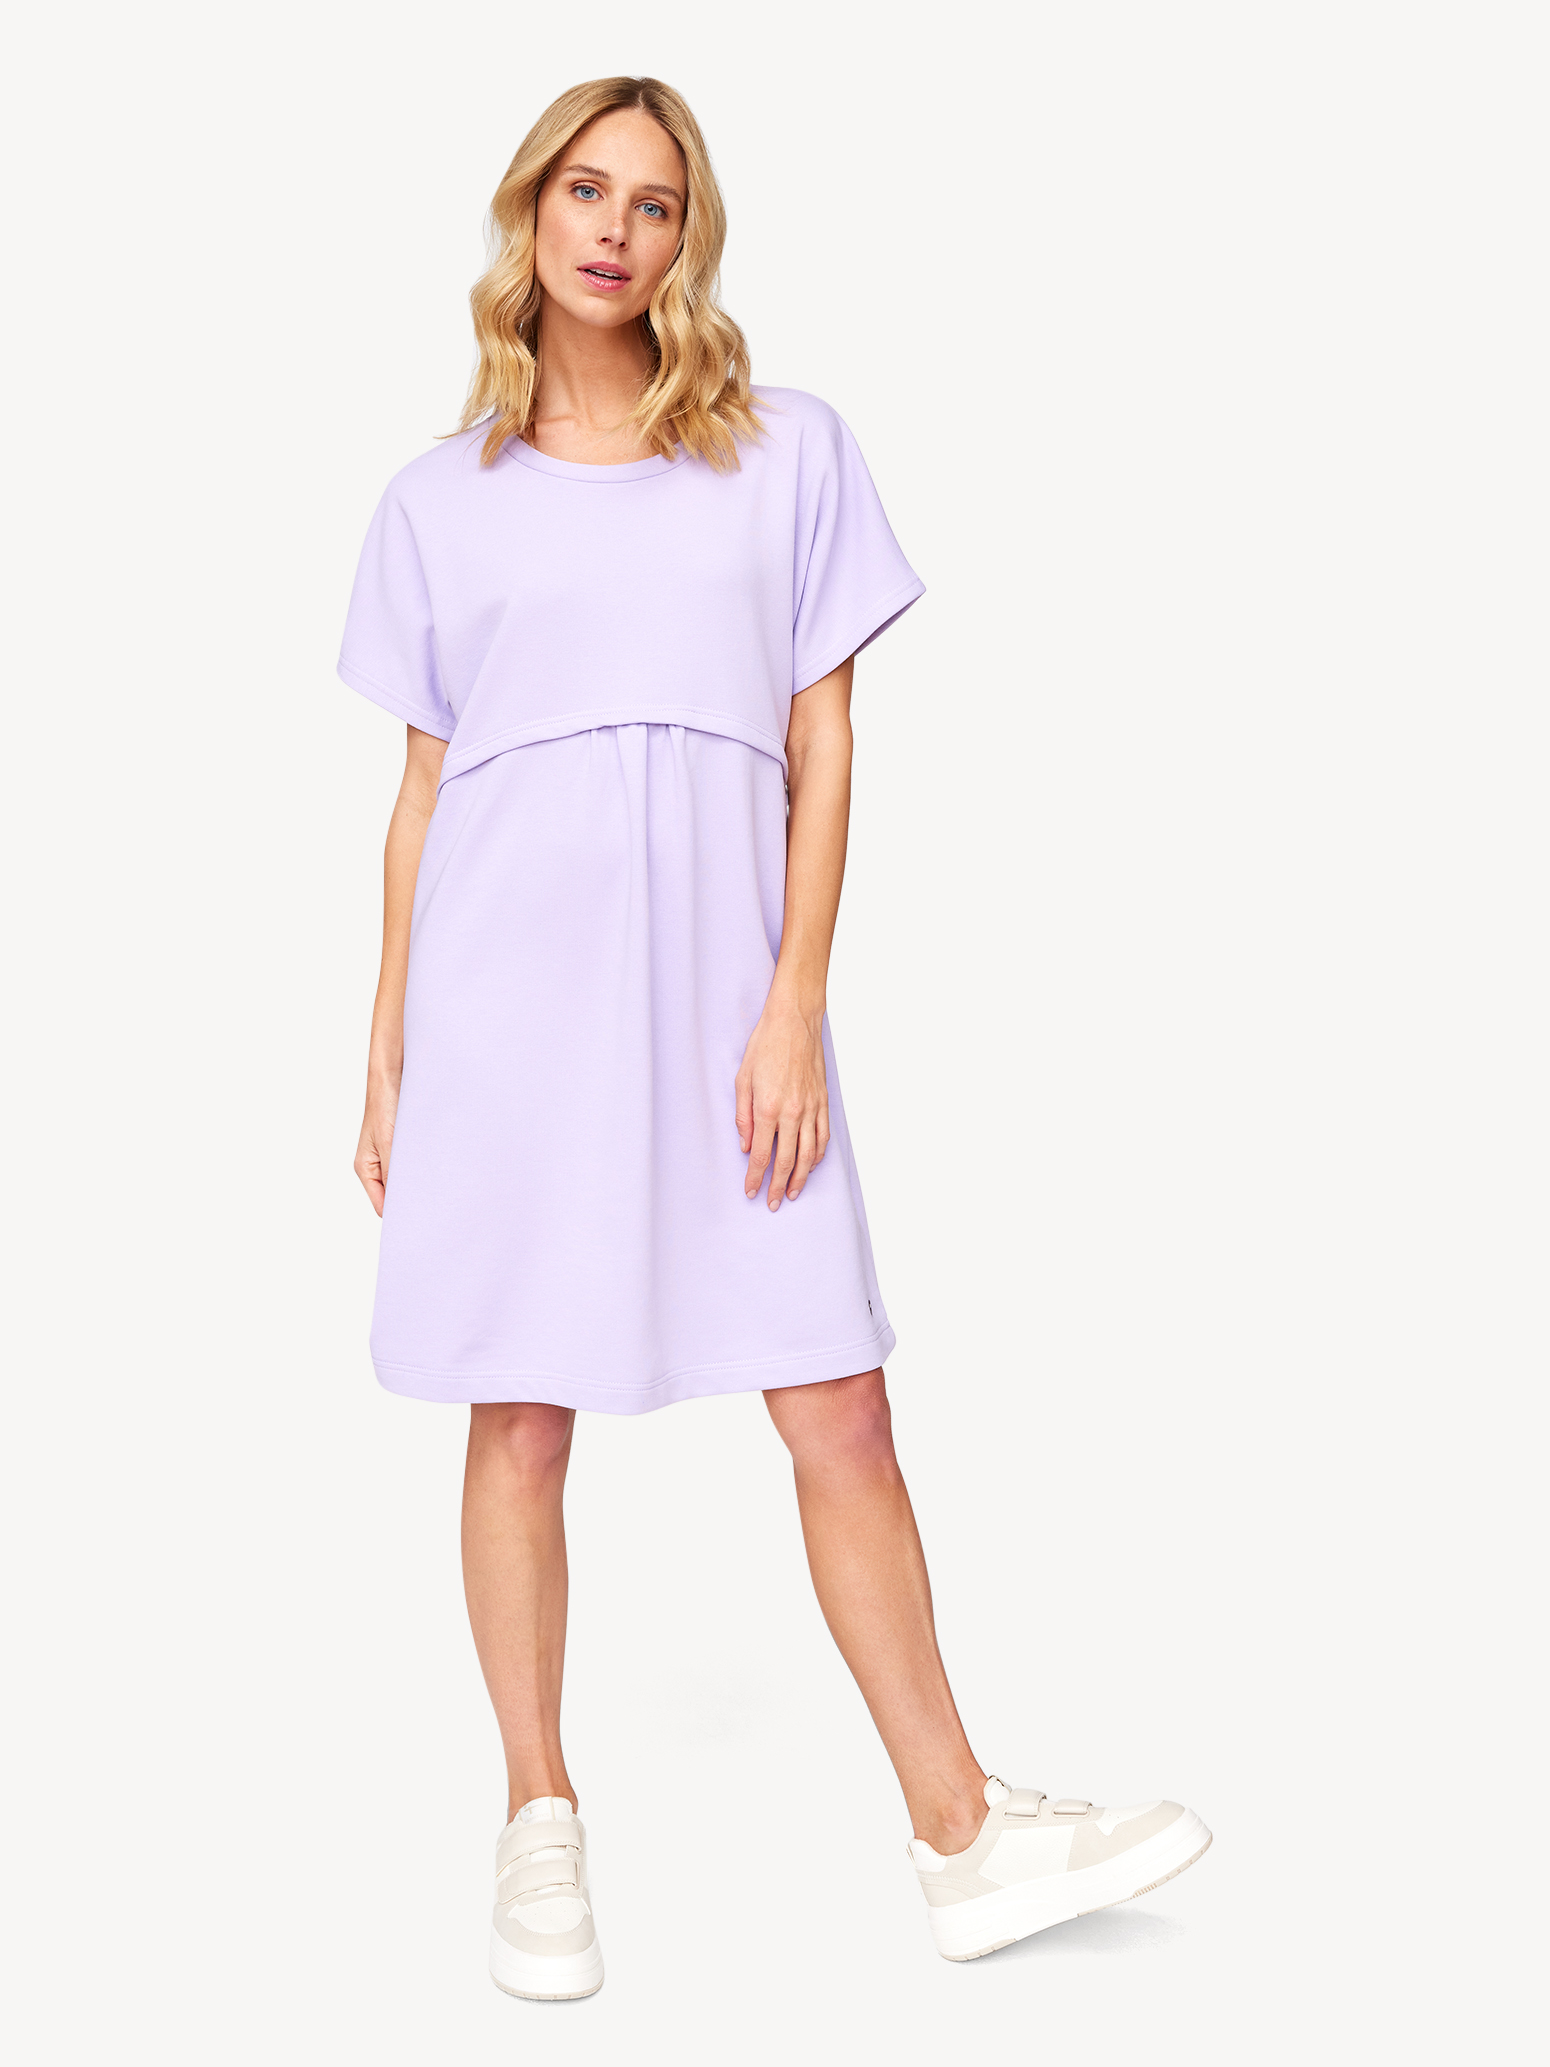 Kleid - lila TAW0068-40058: Tamaris Kleider & Röcke online kaufen!